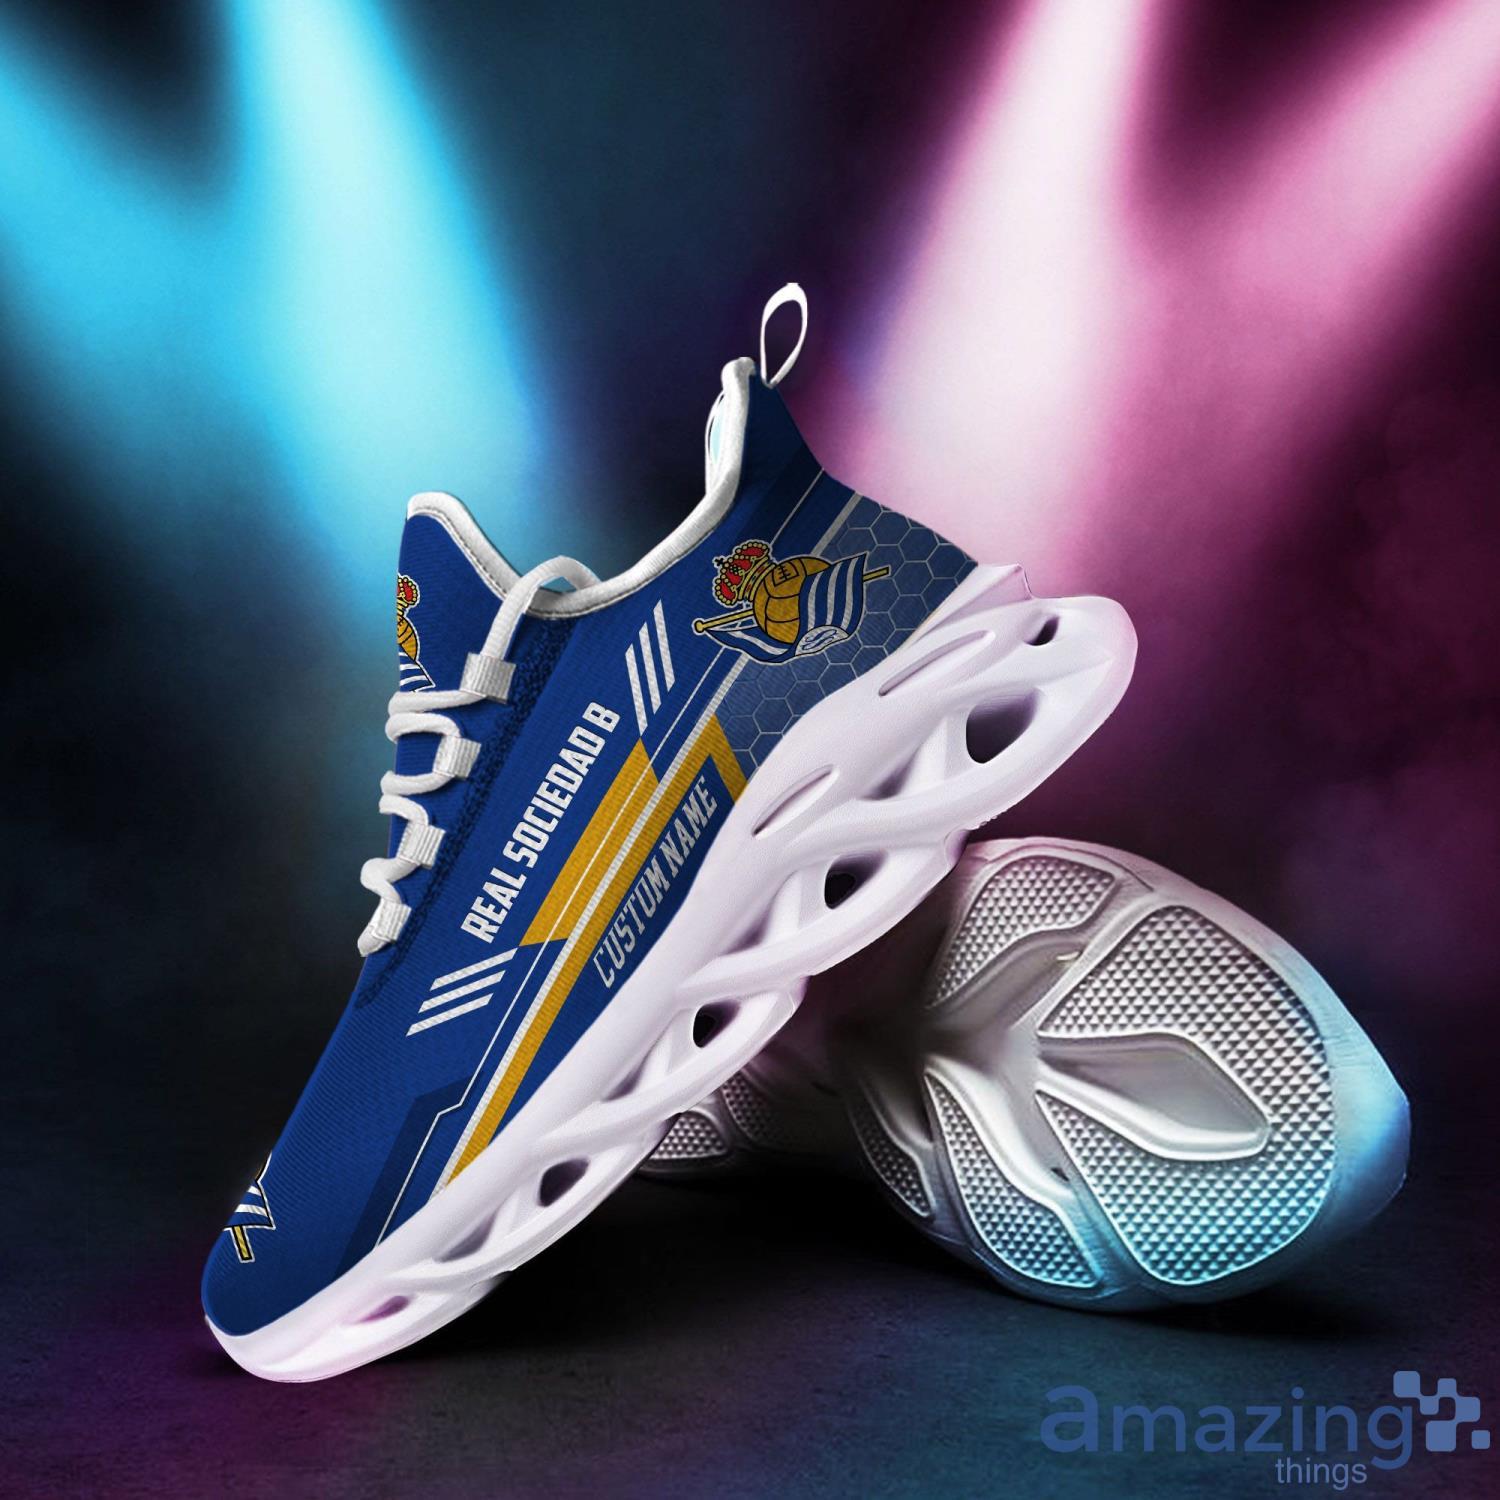 Buy St. Louis Blues Custom Themed Shoes Sneakers for True Fan